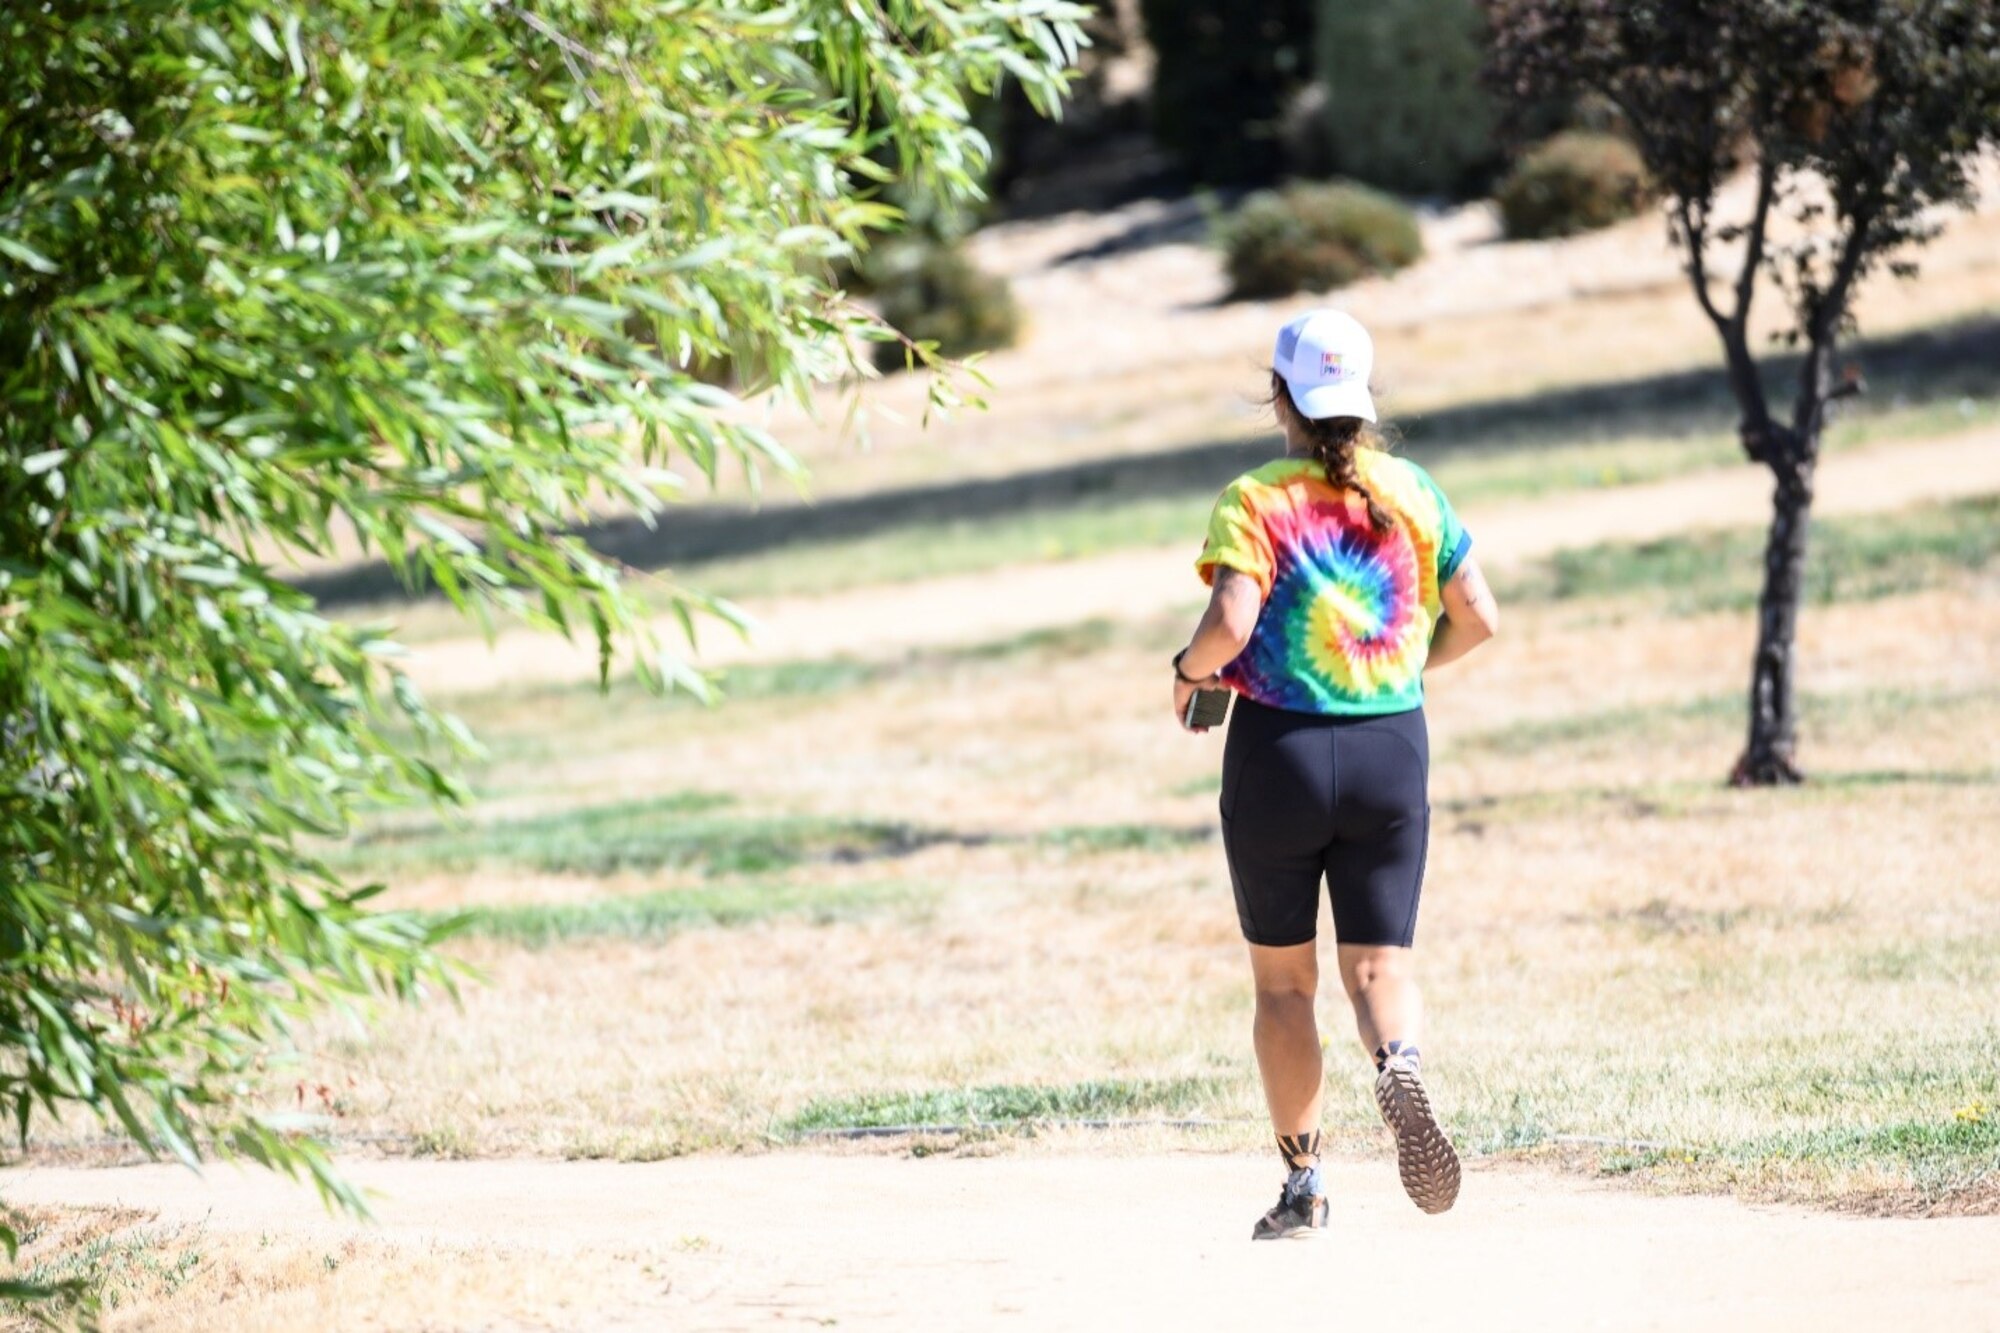 A person in a rainbow tie-dye shirt runs on a dirt path